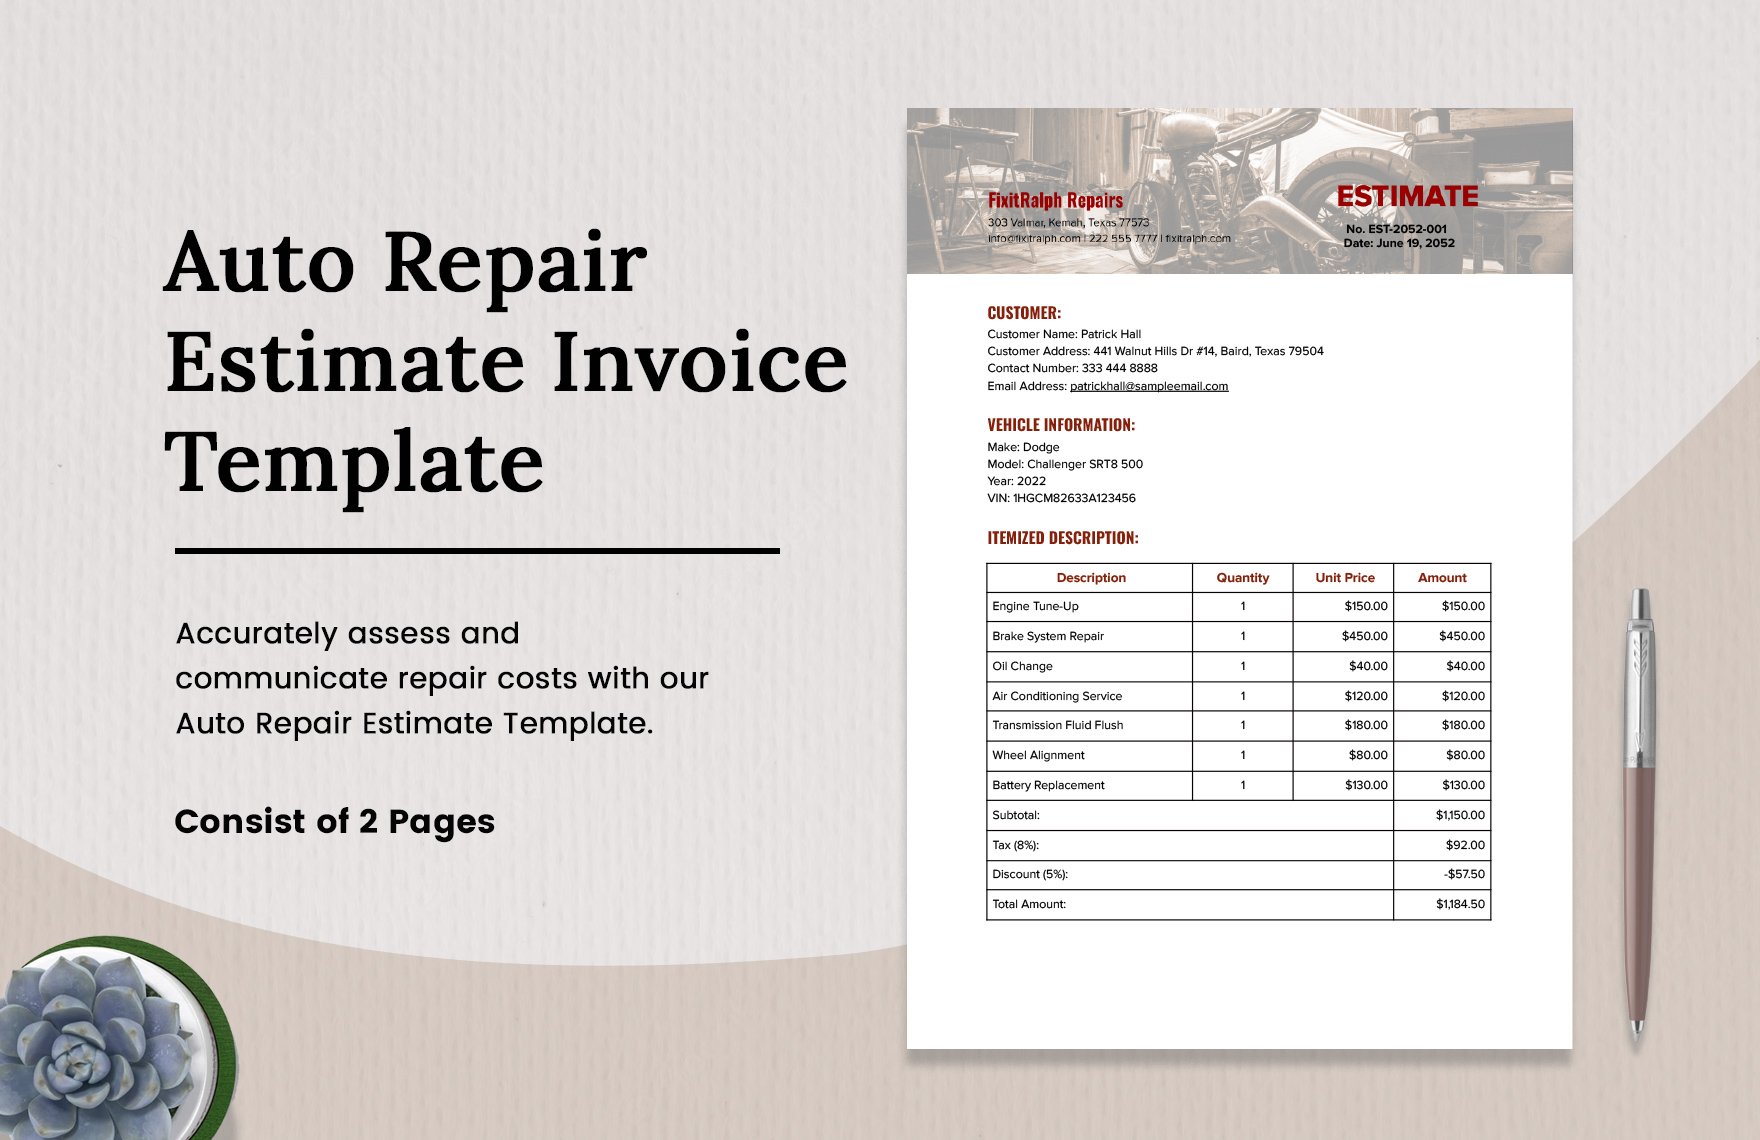 Auto Repair Estimate Invoice 